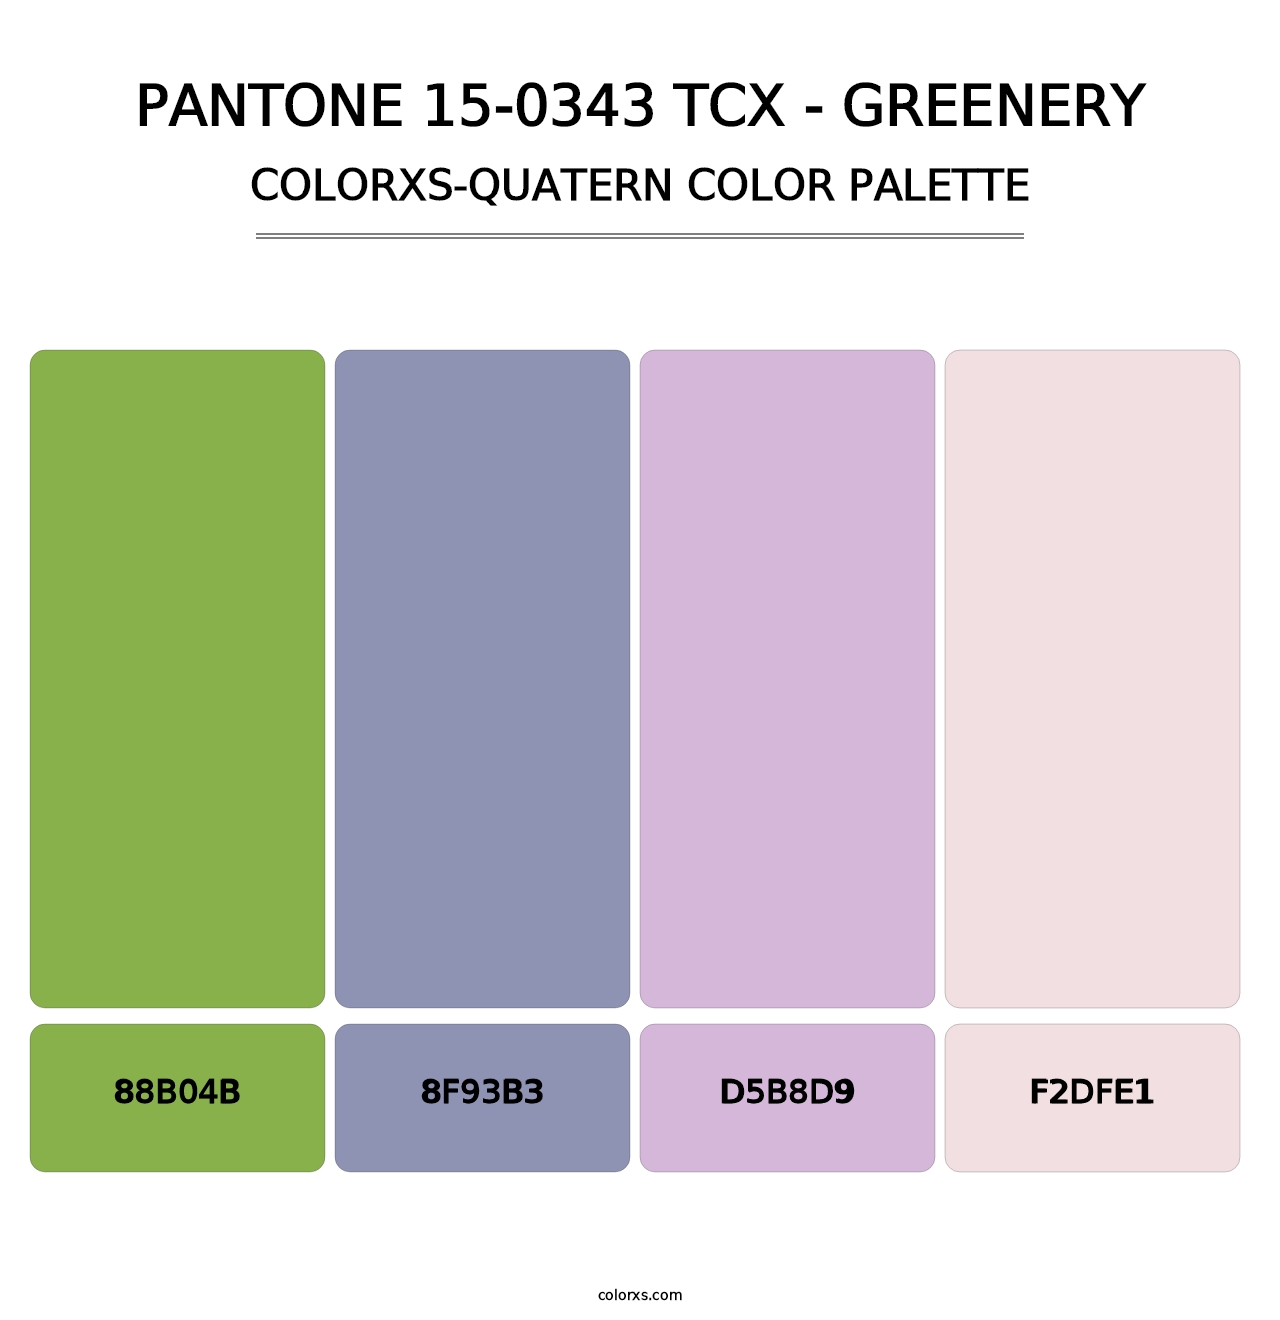 PANTONE 15-0343 TCX - Greenery - Colorxs Quatern Palette